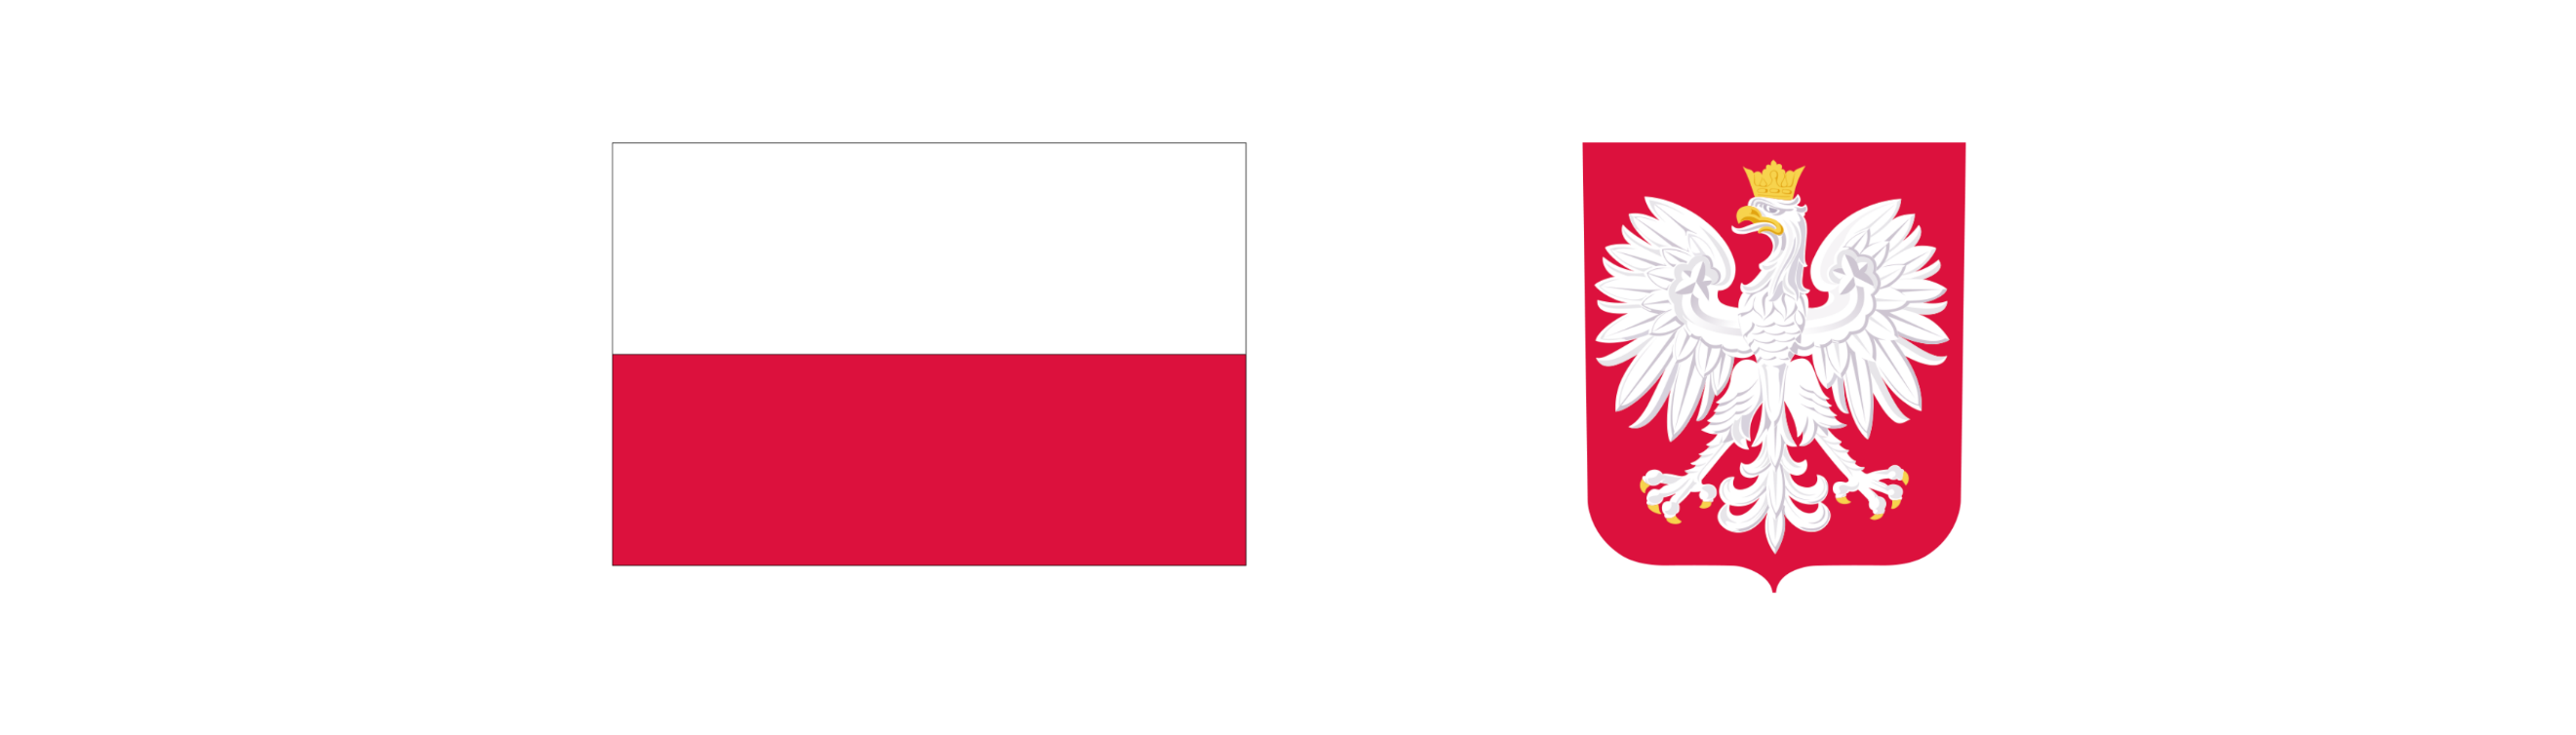 Grafika przedstawiająca flagę i godło Polski